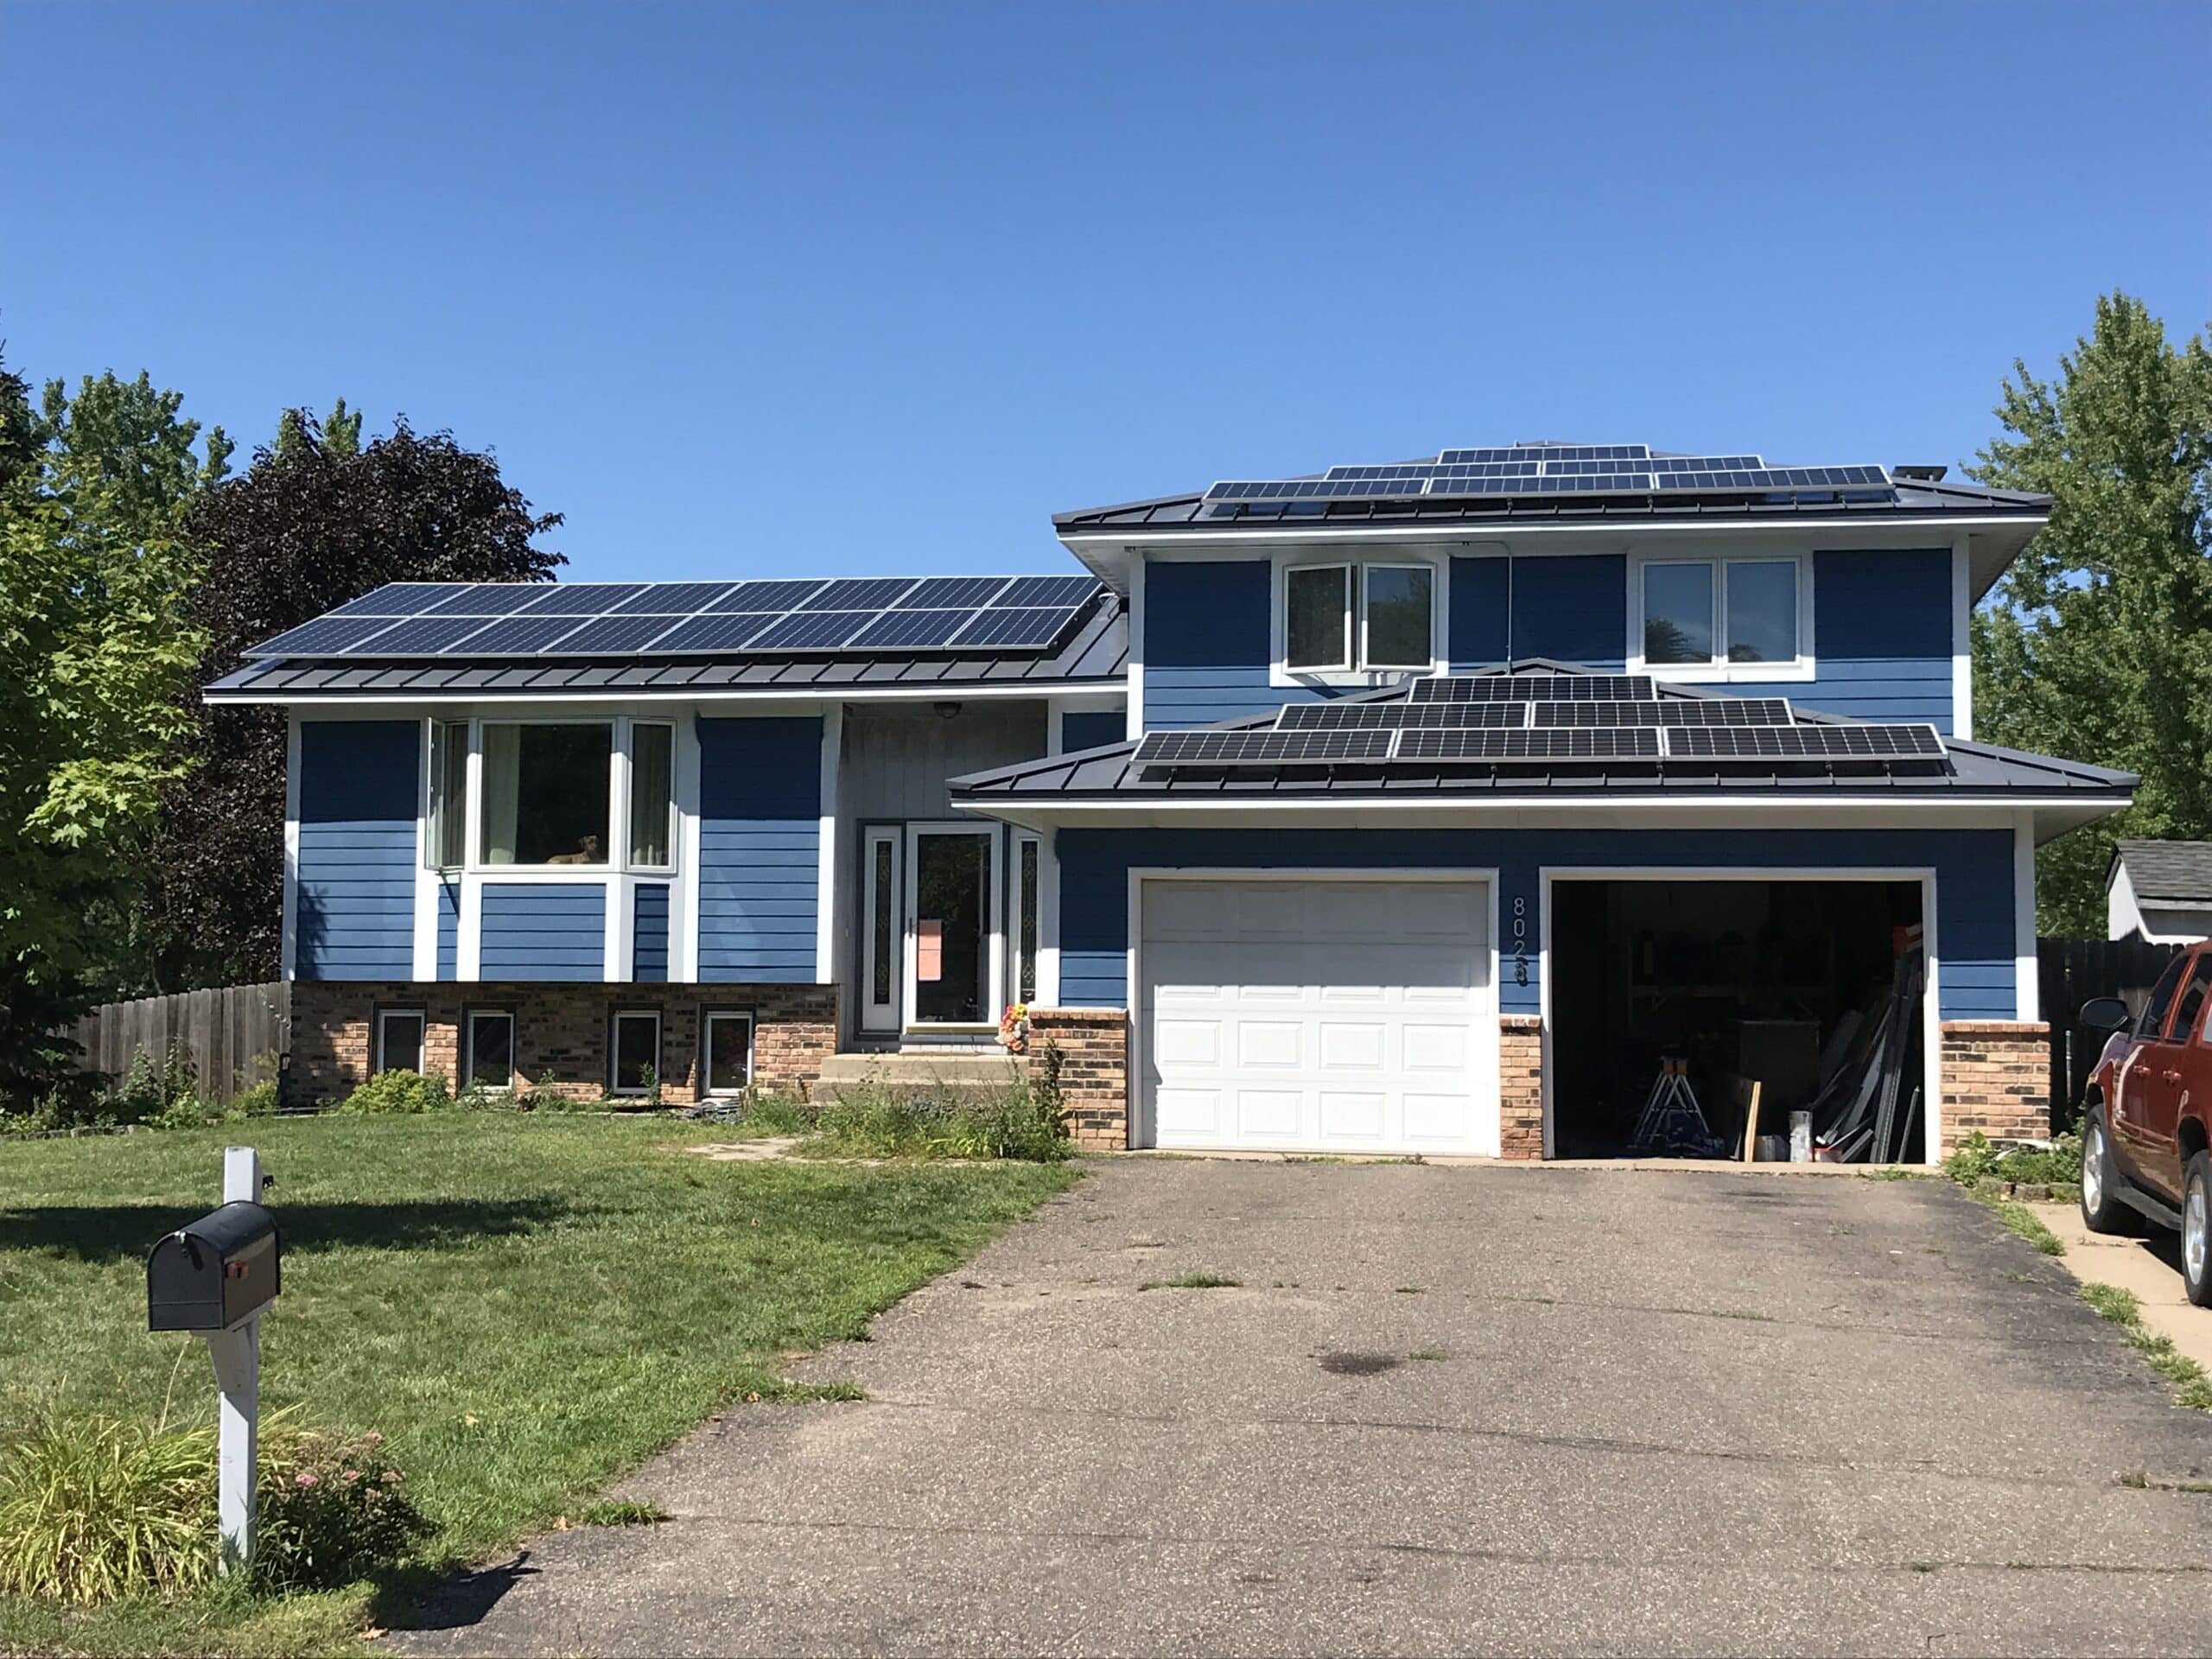 Minnesota residential solar power installation